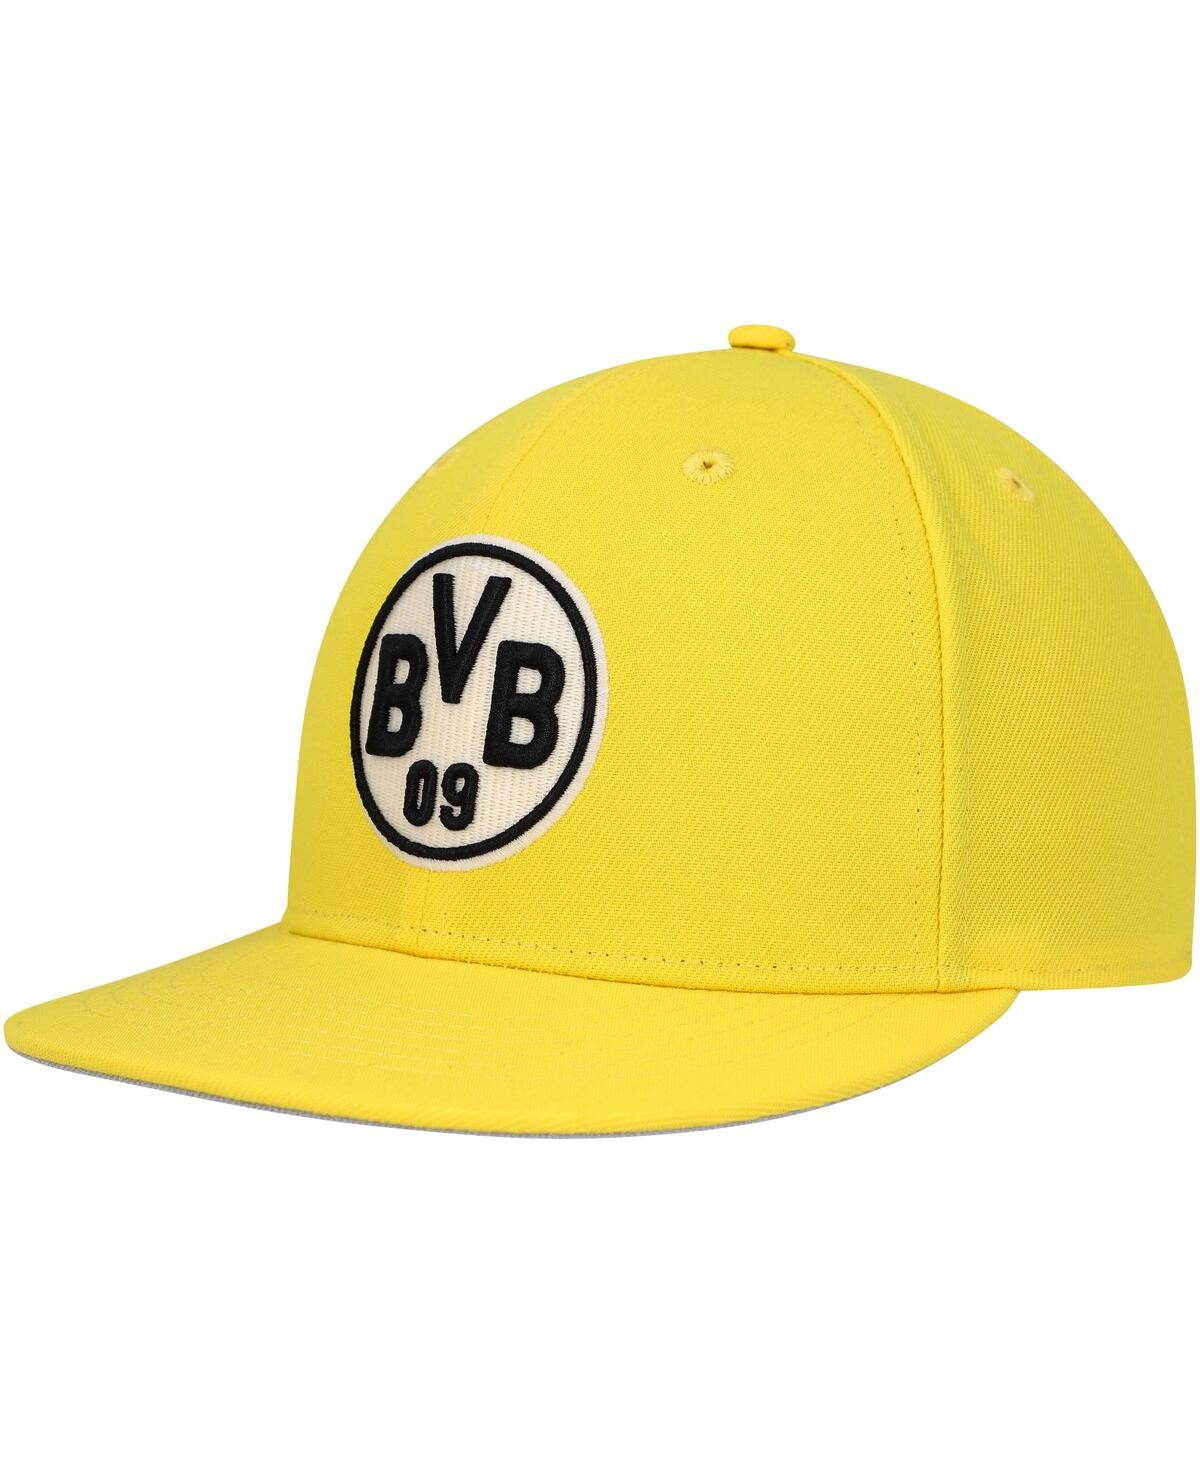 Men's Yellow Borussia Dortmund America's Game Snapback Hat - Yellow